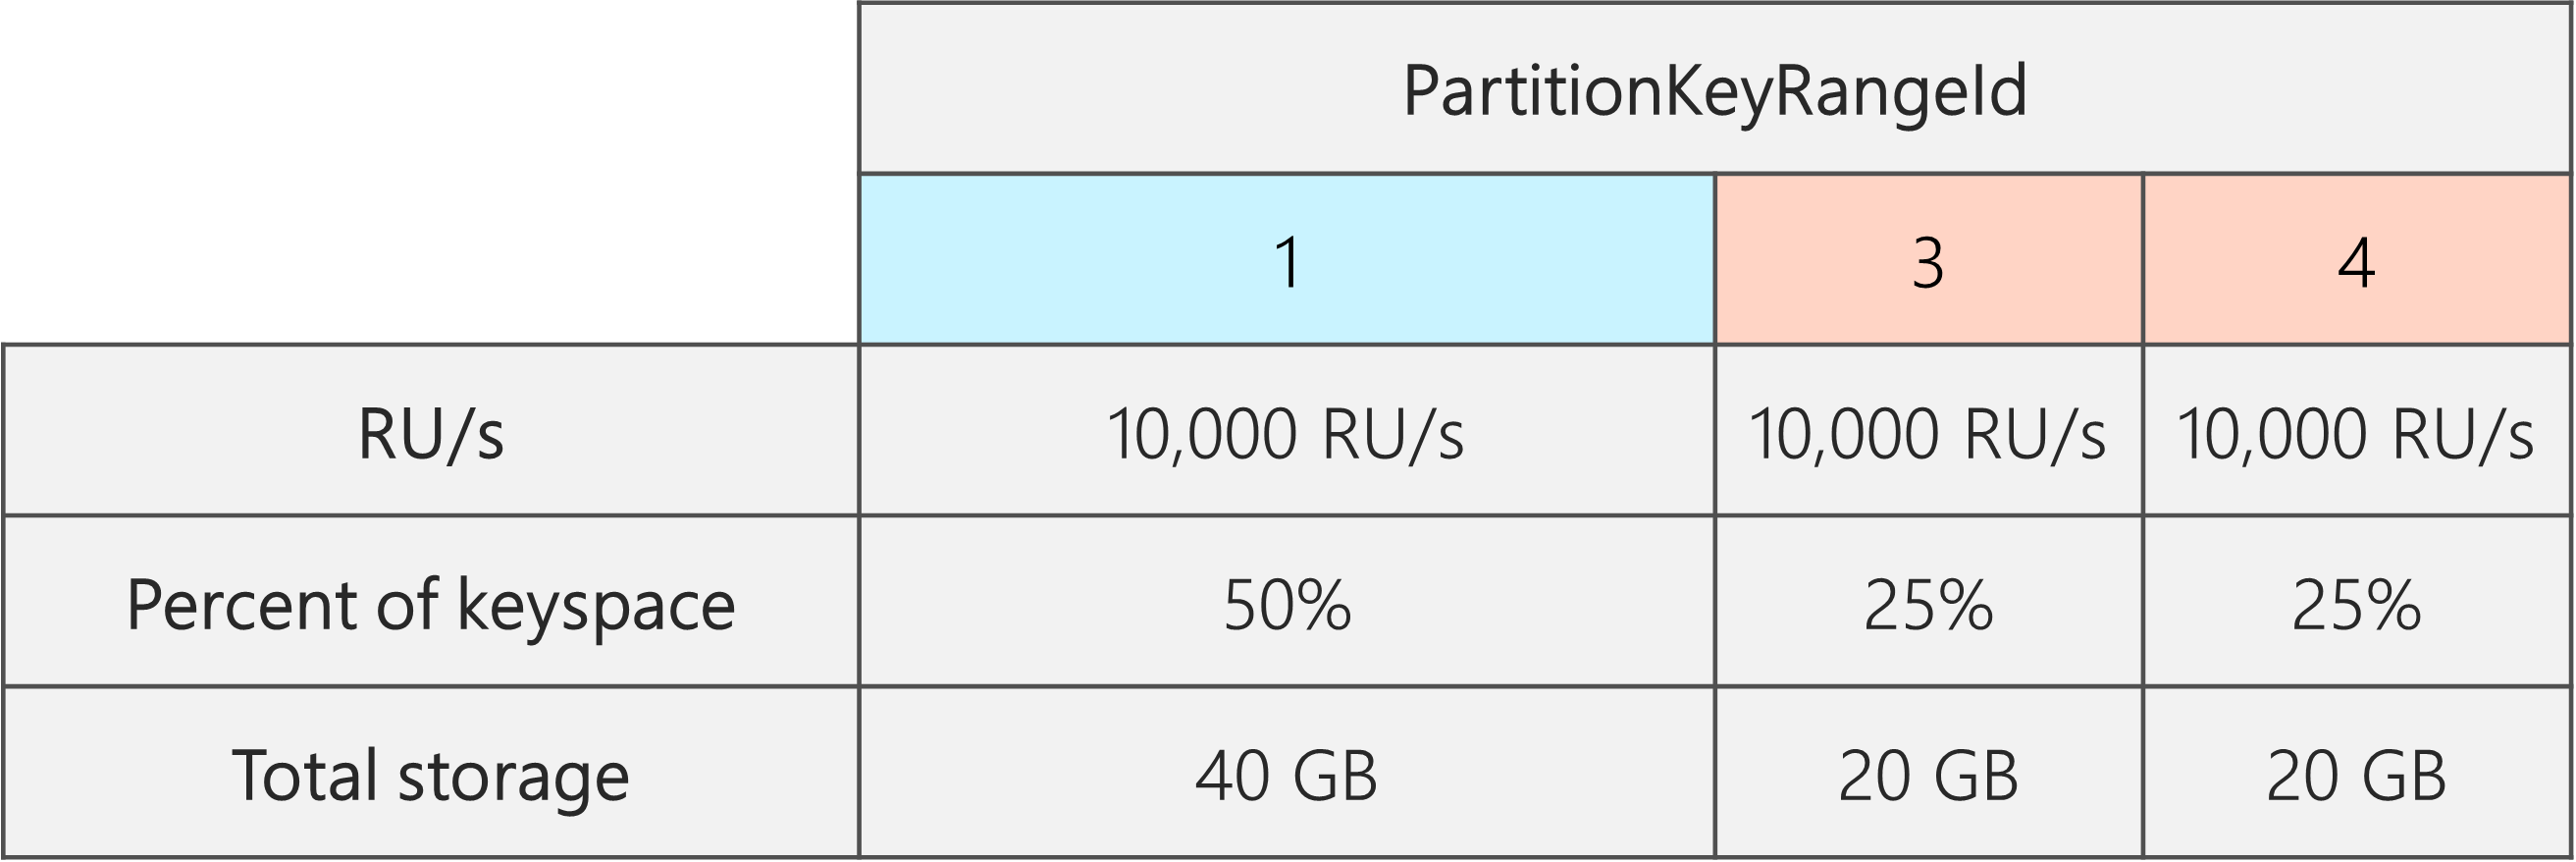 분할 후에는 PartitionKeyRangeIds 3개가 있고, 각각에는 10,000RU/s가 있습니다. 그러나 PartitionKeyRangeIds 중 하나는 전체 키스페이스의 50%(40GB)를 차지하고, 나머지 PartitionKeyRangeIds 2개는 전체 키스페이스의 25%(20GB)를 차지합니다.